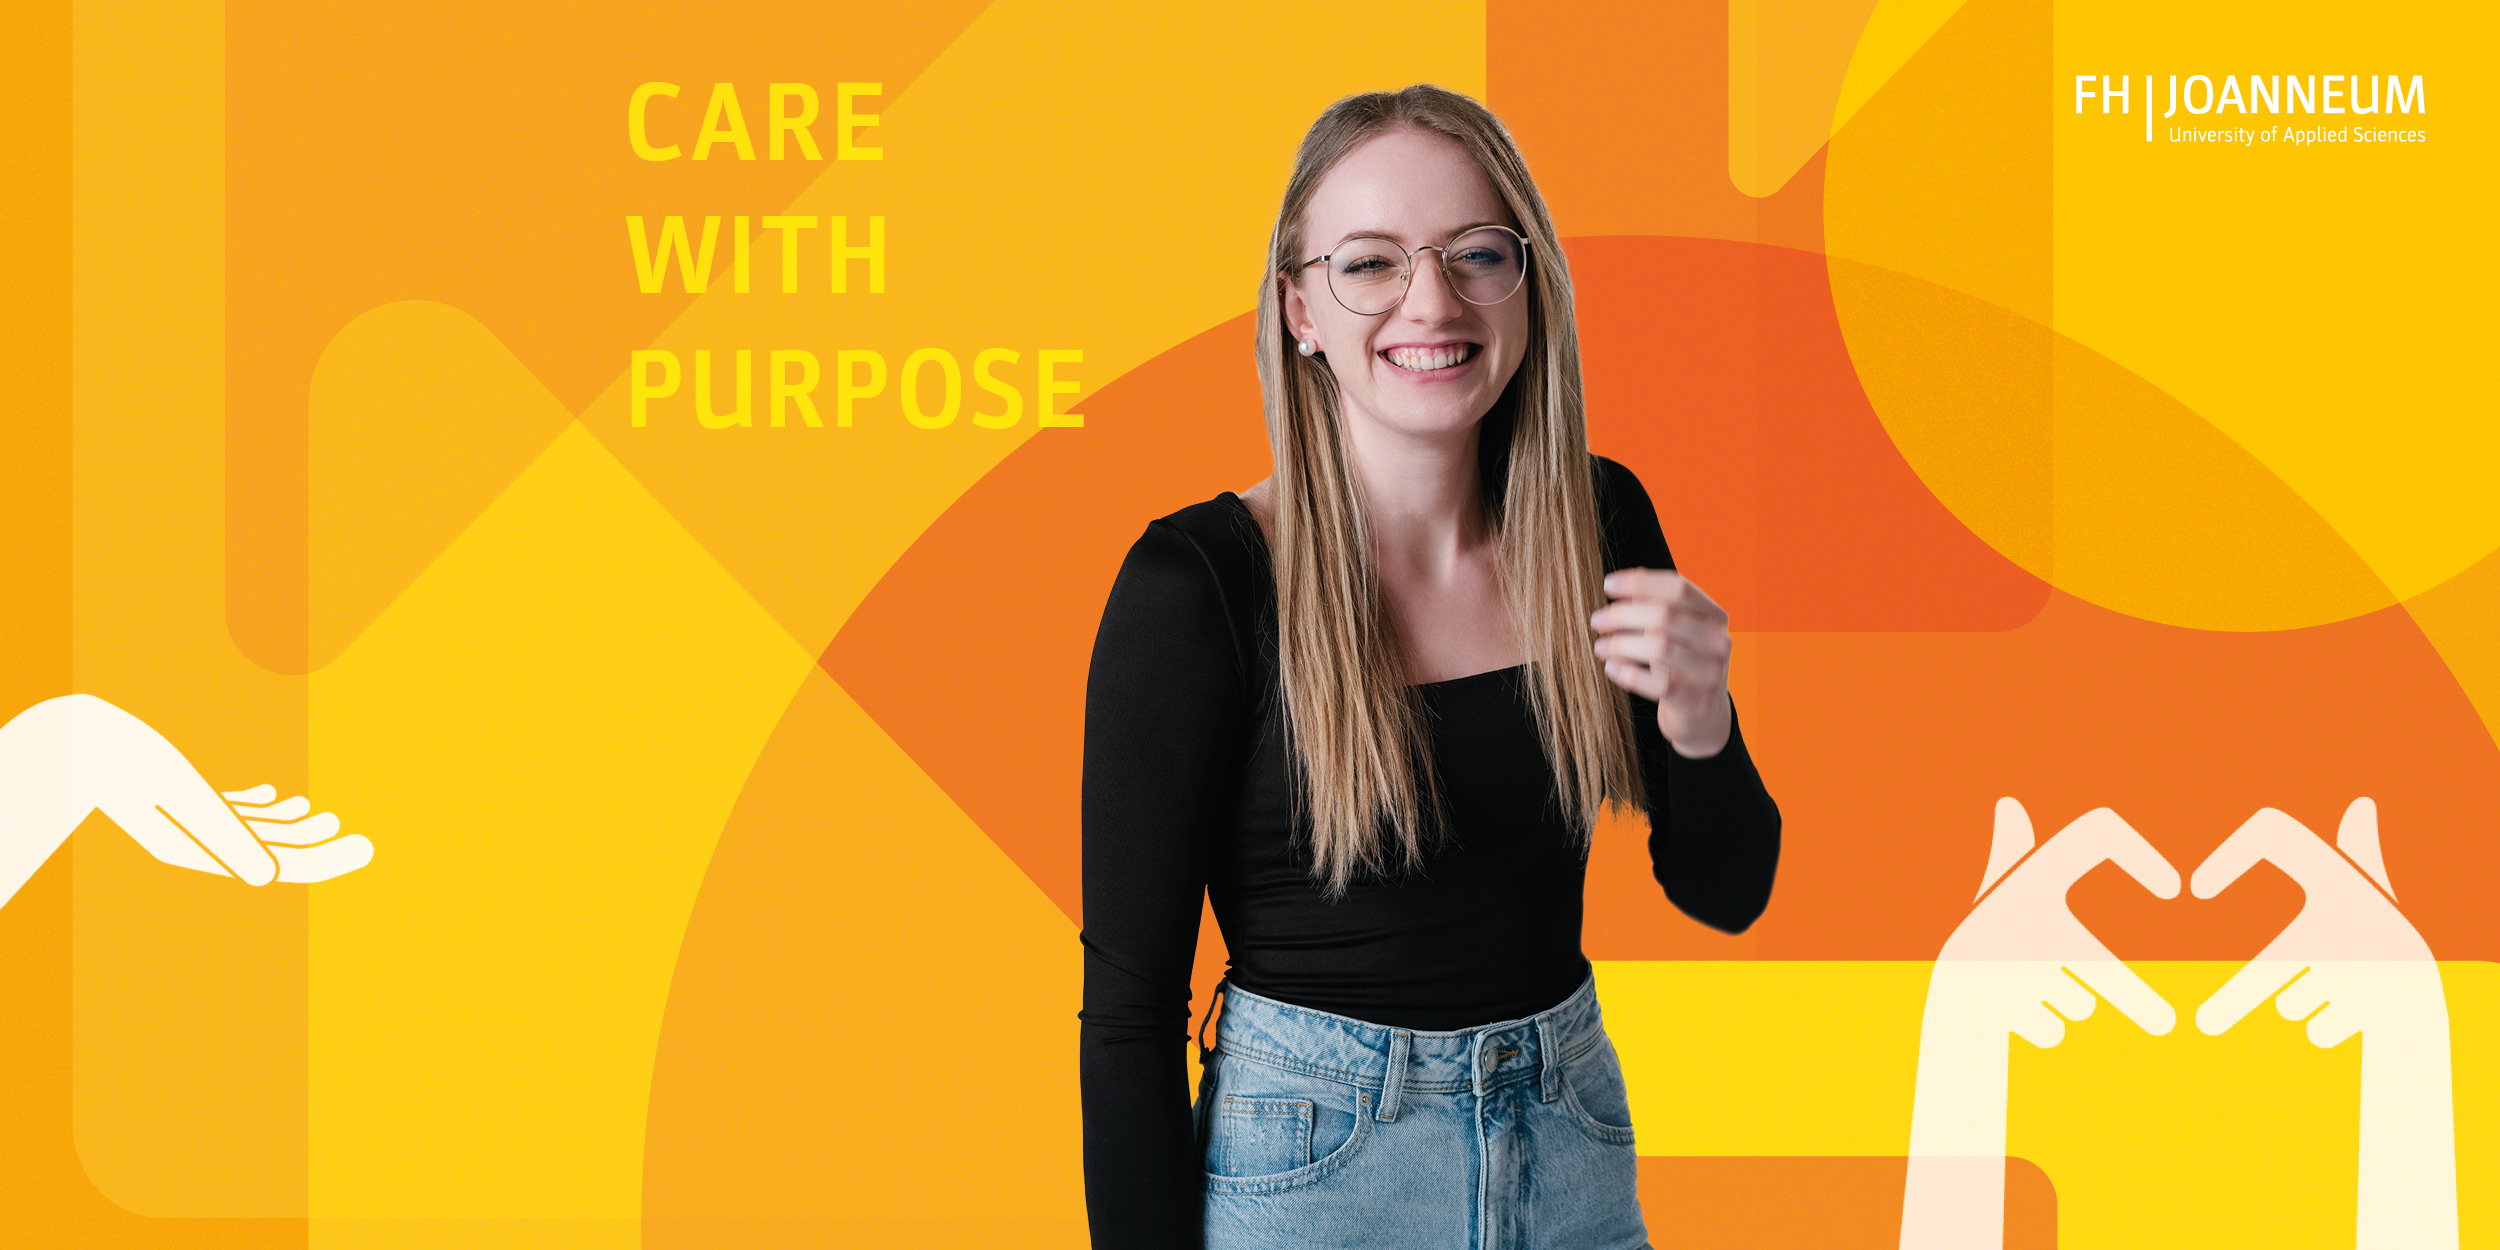 Care with Purpose: Maria Dichtinger